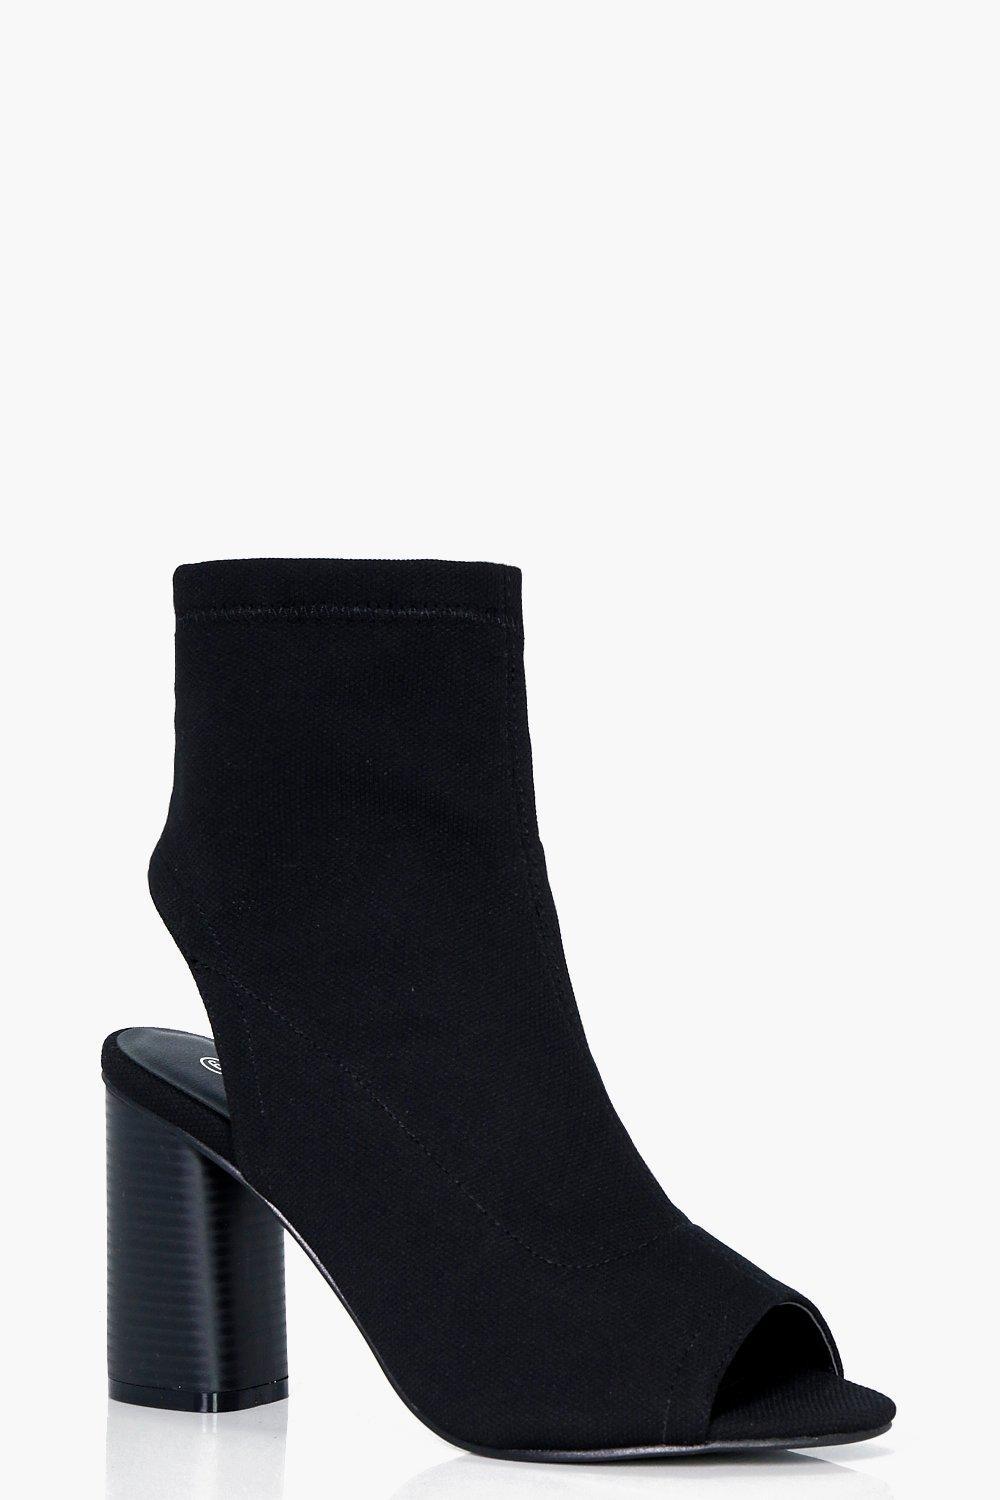 Boohoo Wide Fit Peeptoe Sock Boots in Black | Lyst UK